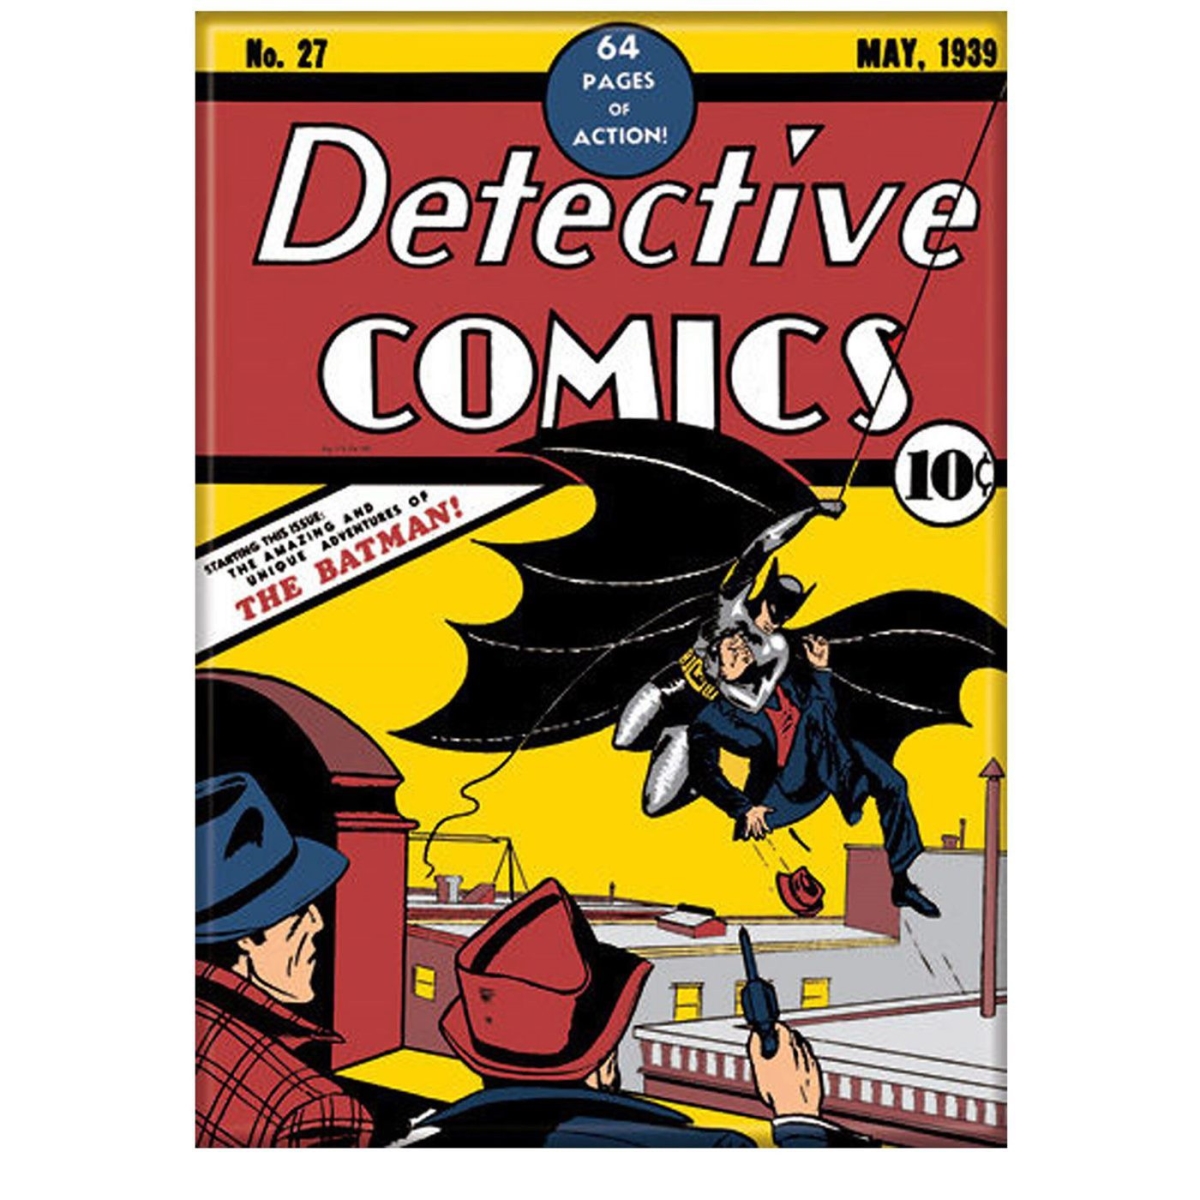 Picture of Batman magbatdetcomic Batman No.27 Detective Comics Magnet